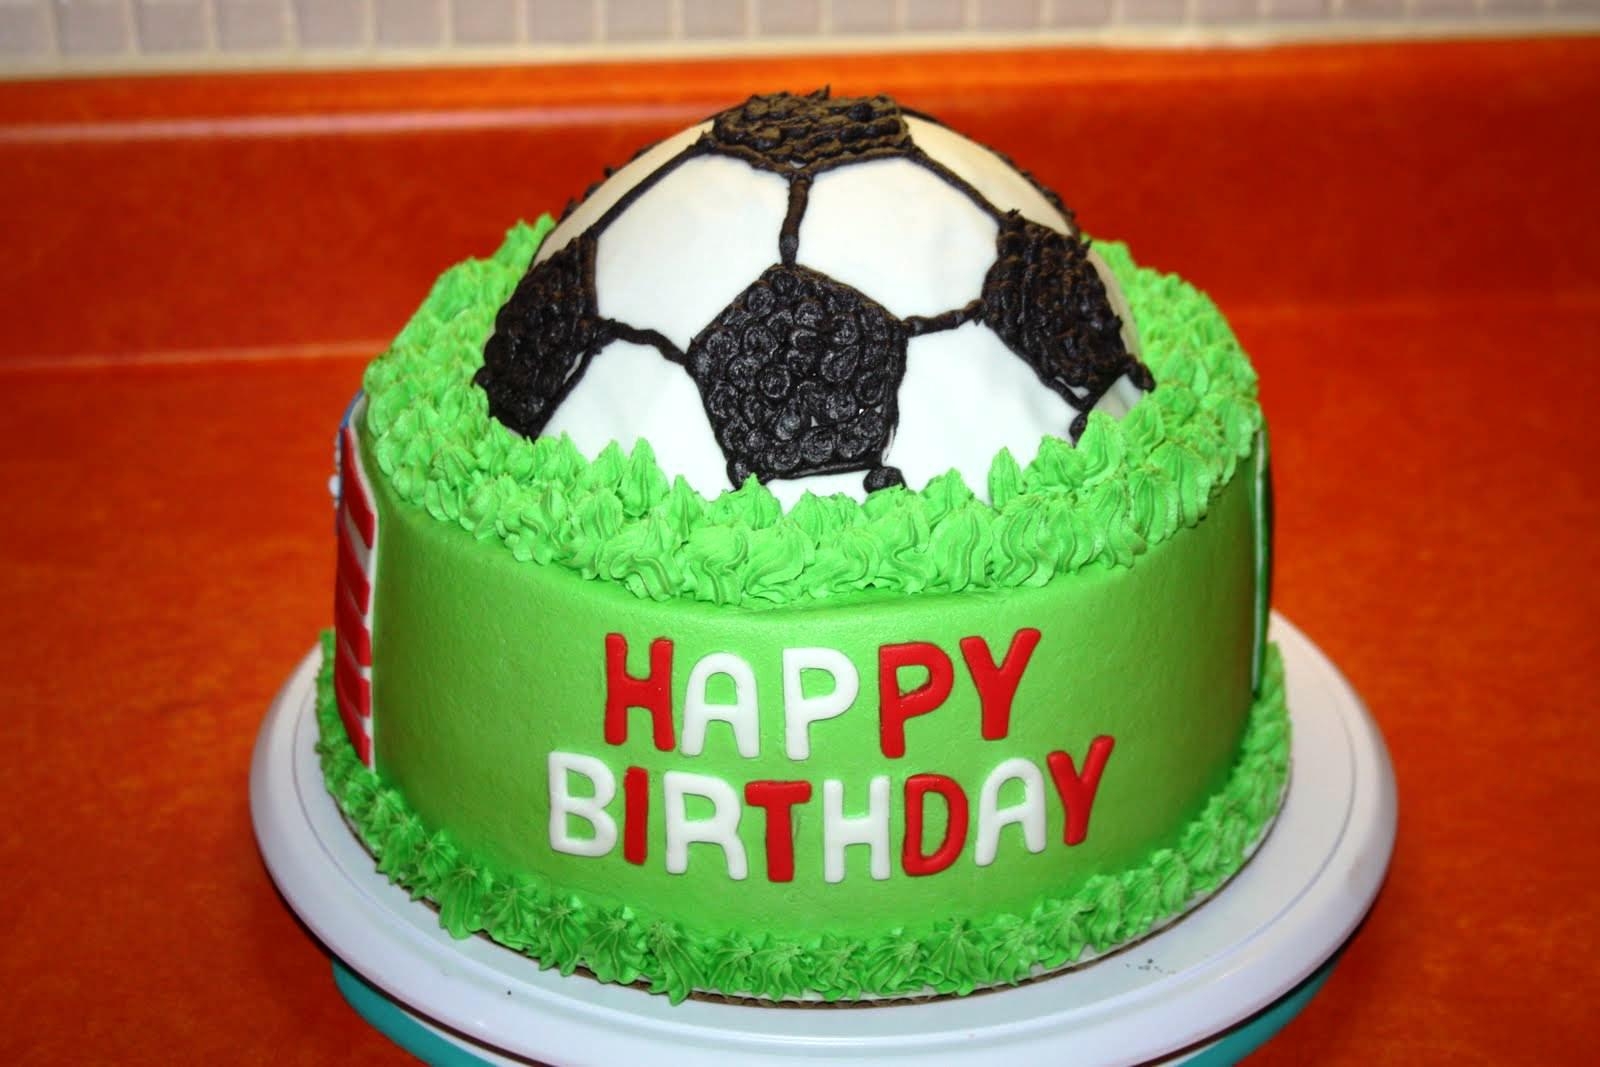 Поздравление с рождением мальчика футболиста. Торт для мальчика. Торт футбольный для мальчика 8 лет. Торты футбольные для мальчиков на день рождения. Торт футбольный для мальчика 9 лет.